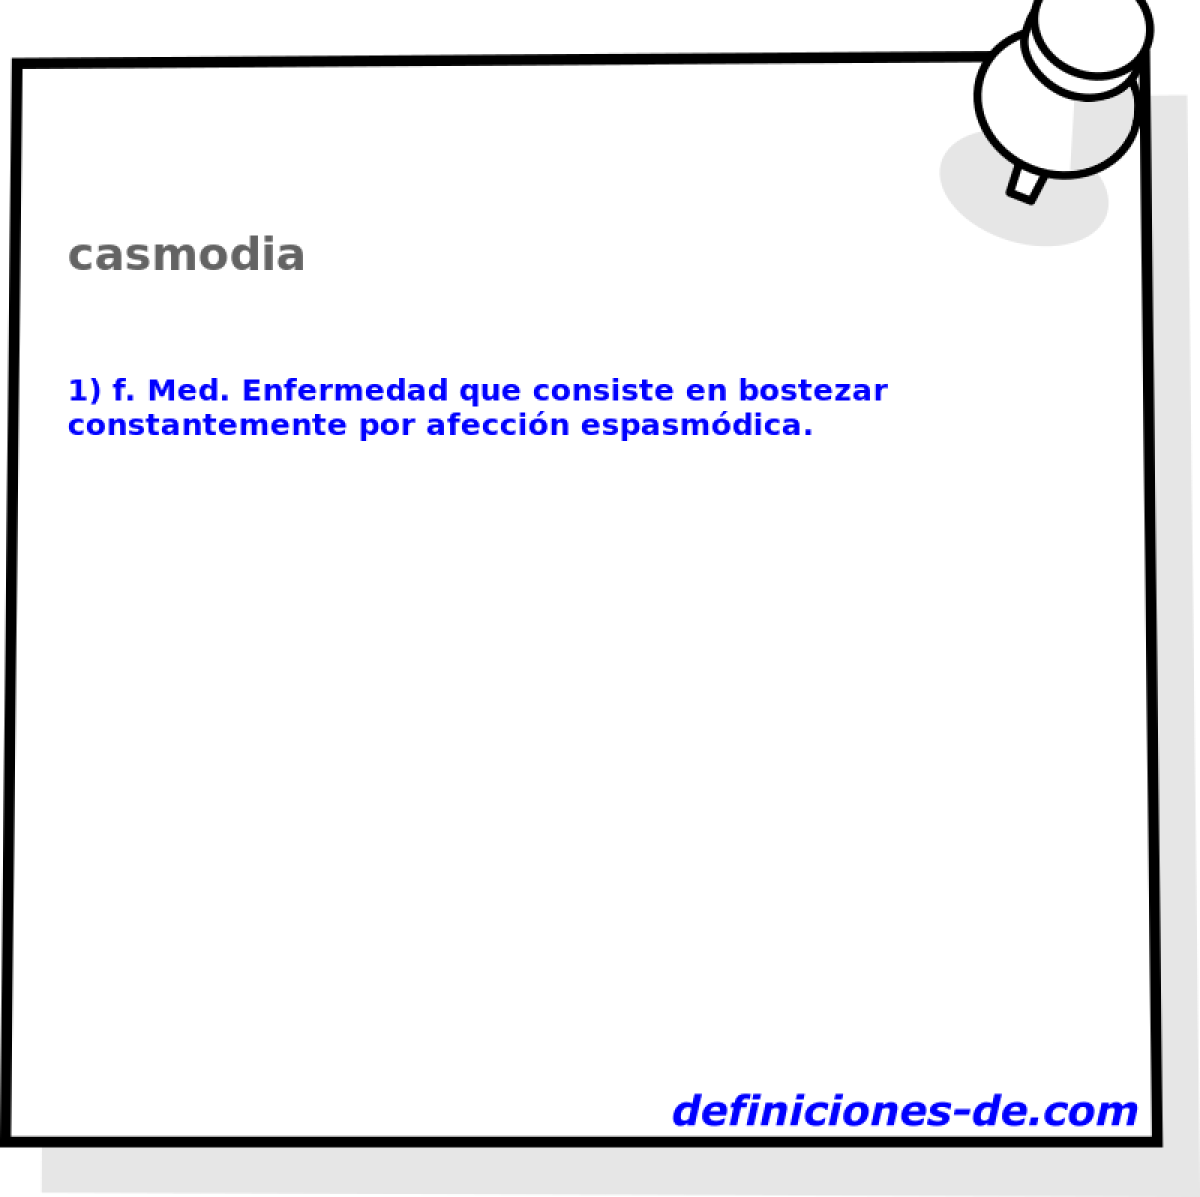 casmodia 